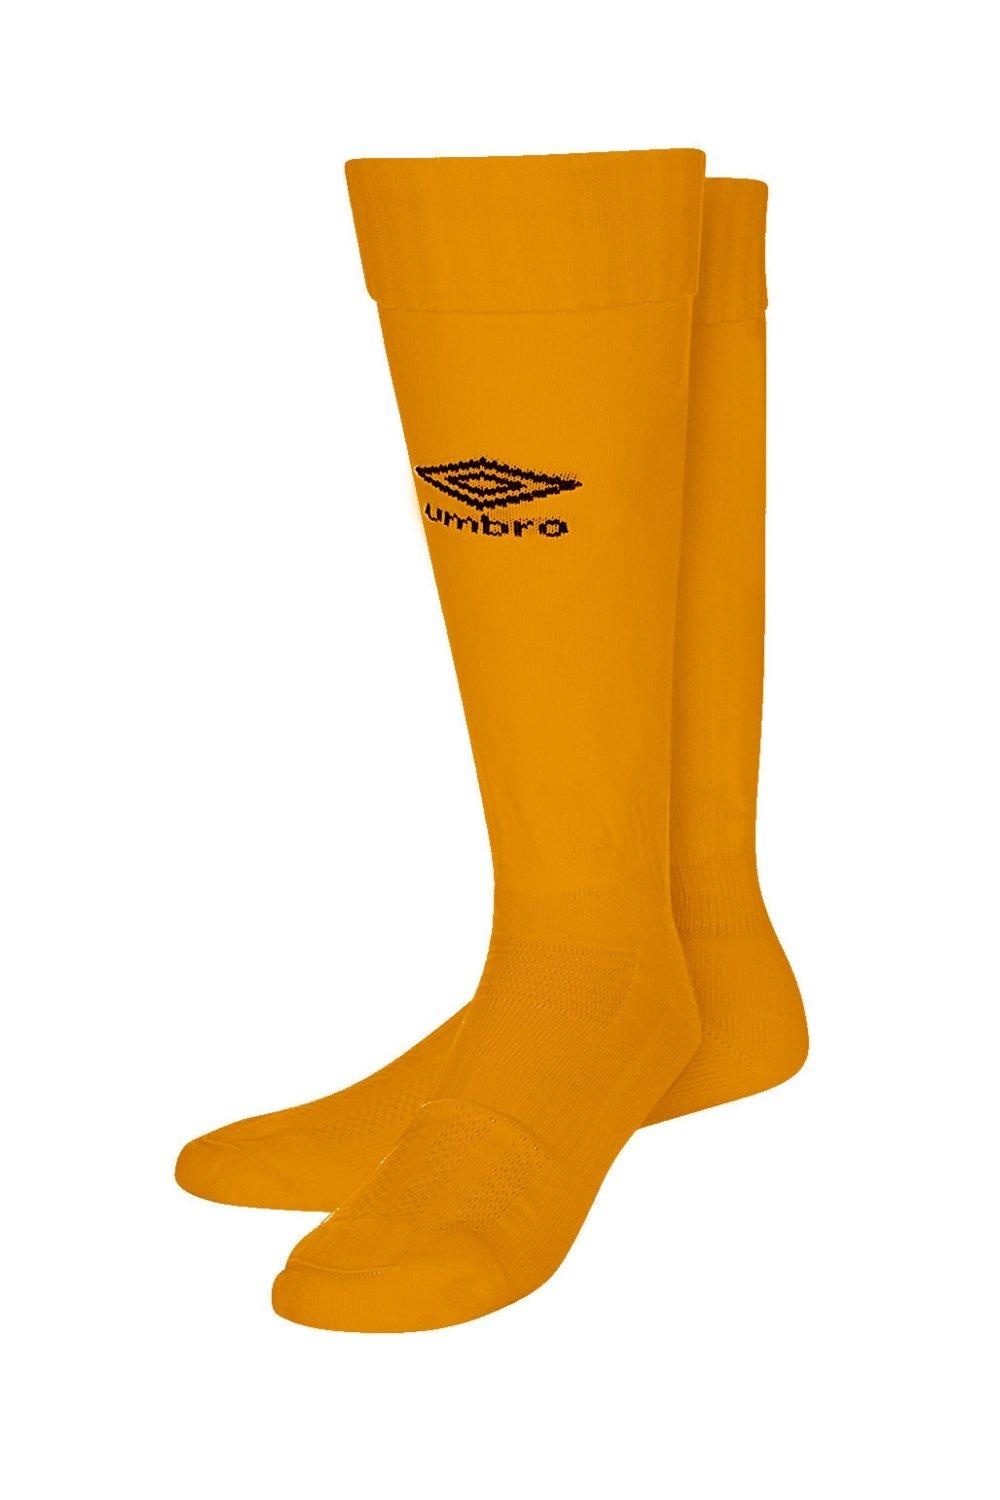 Футбольные носки Classico Umbro, оранжевый umbro football ball classic